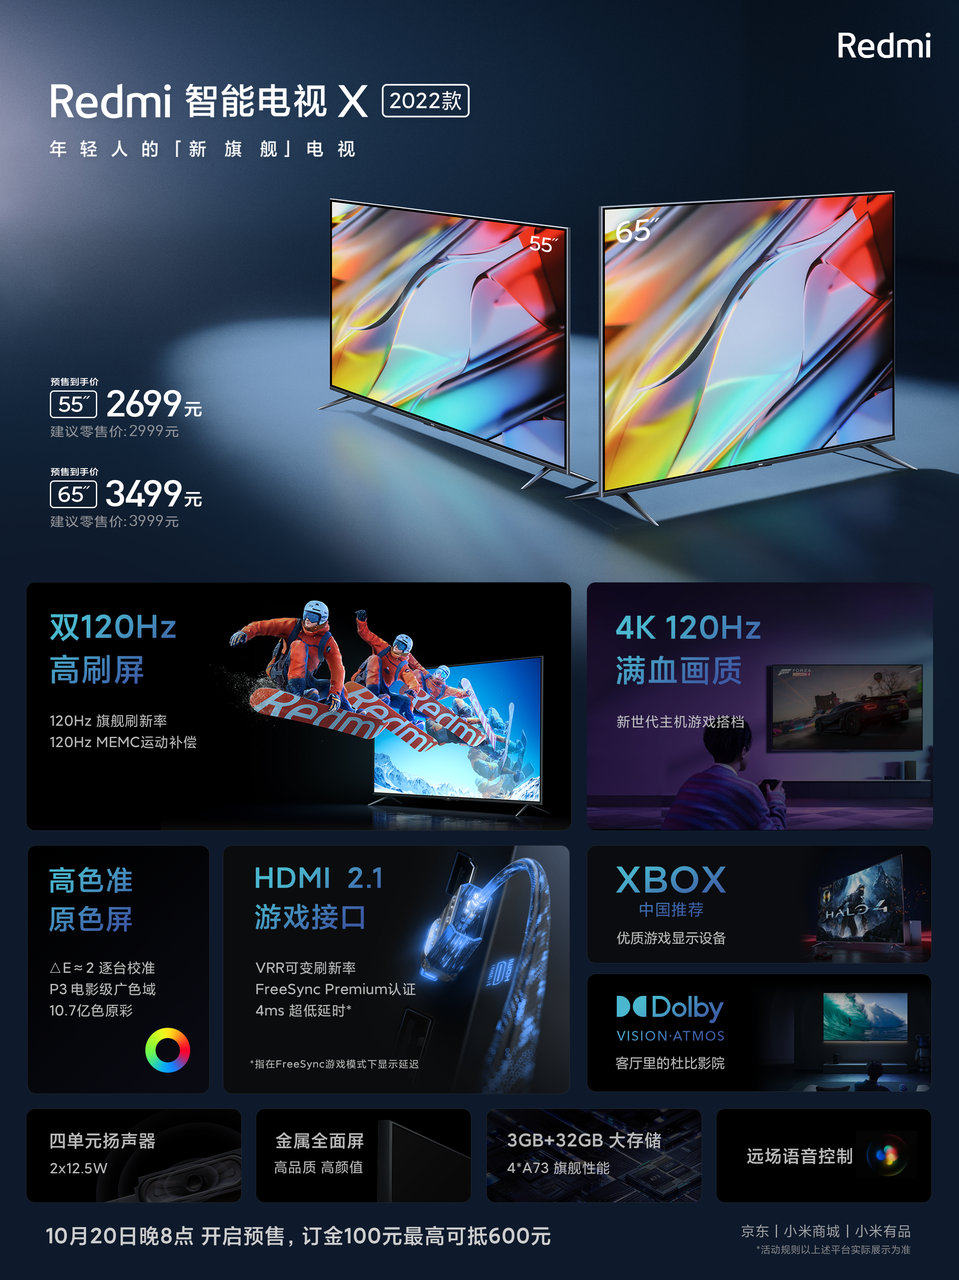 新品Redmi智能电视X2022款发布 售价2699元起